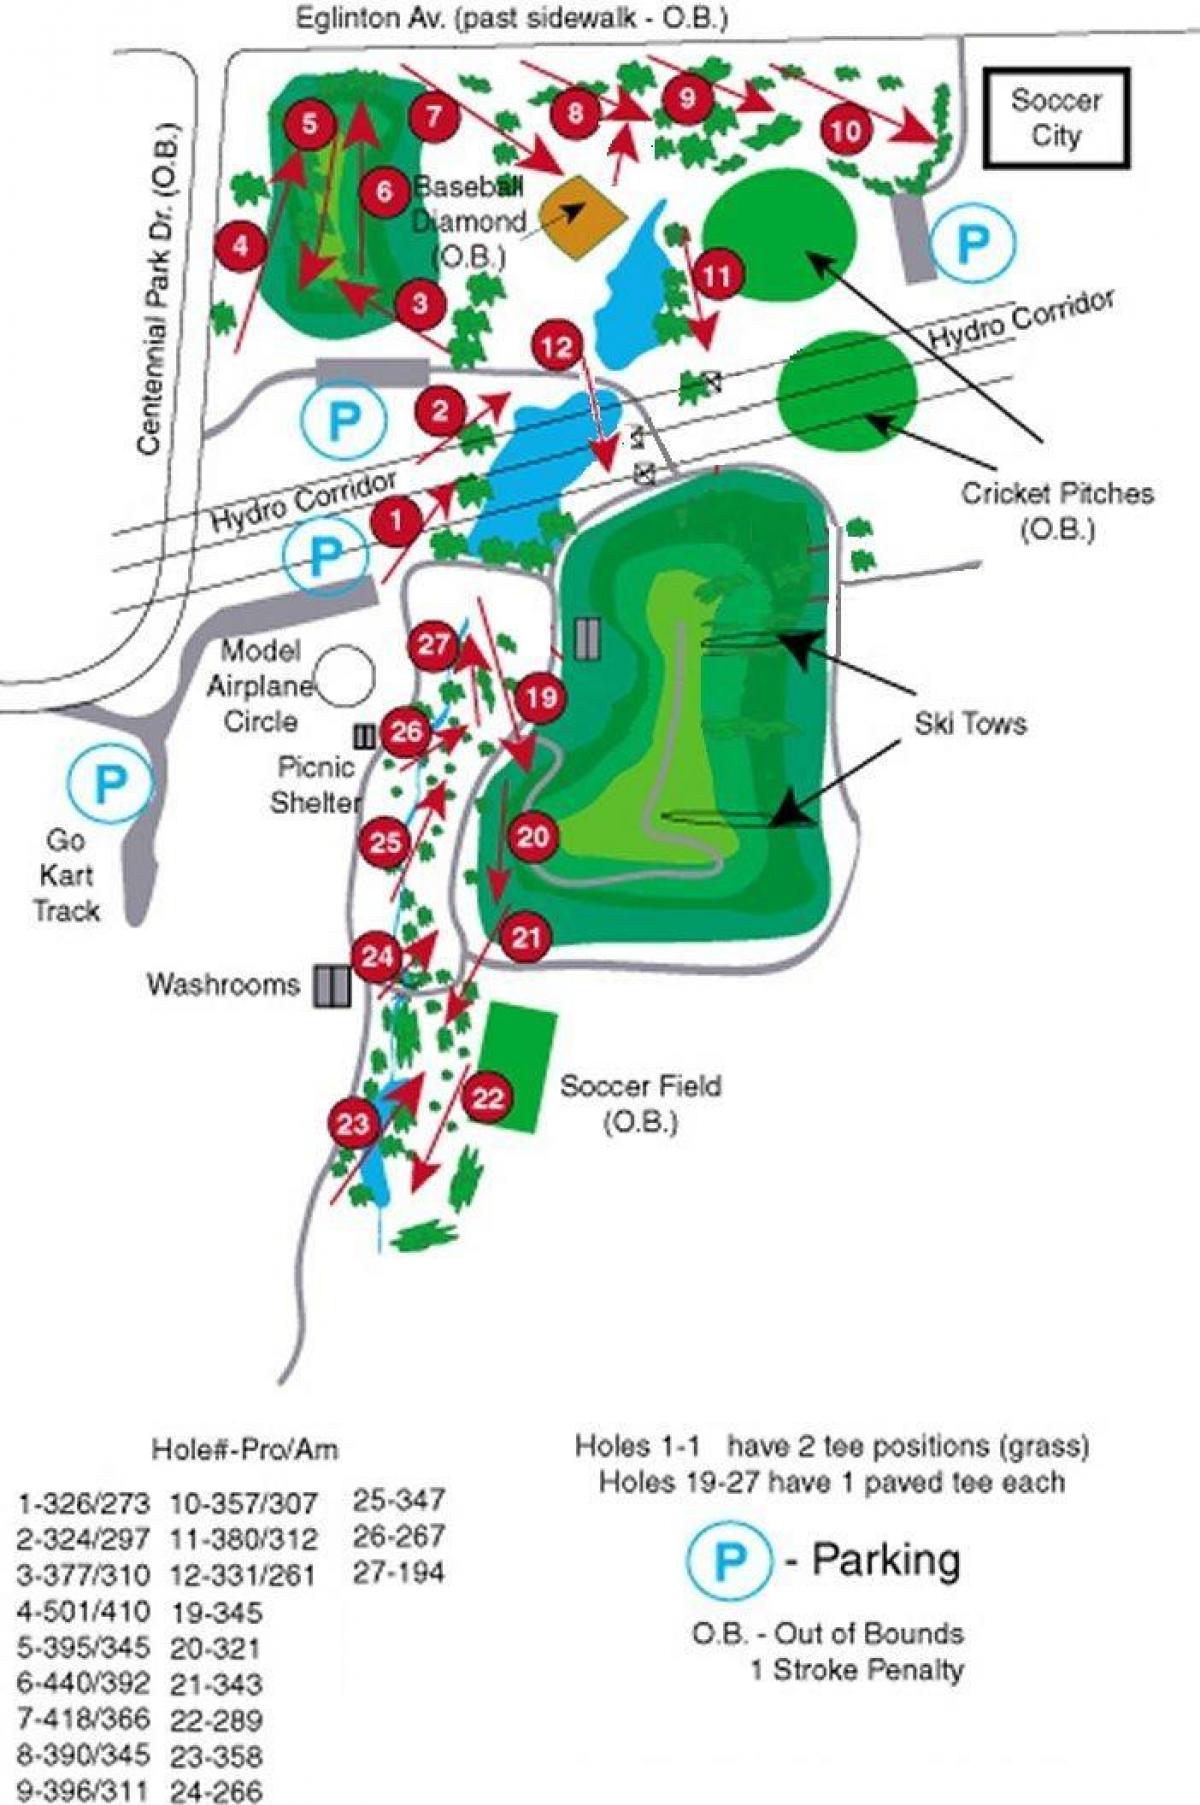 Peta Taman Centennial kursus golf Toronto